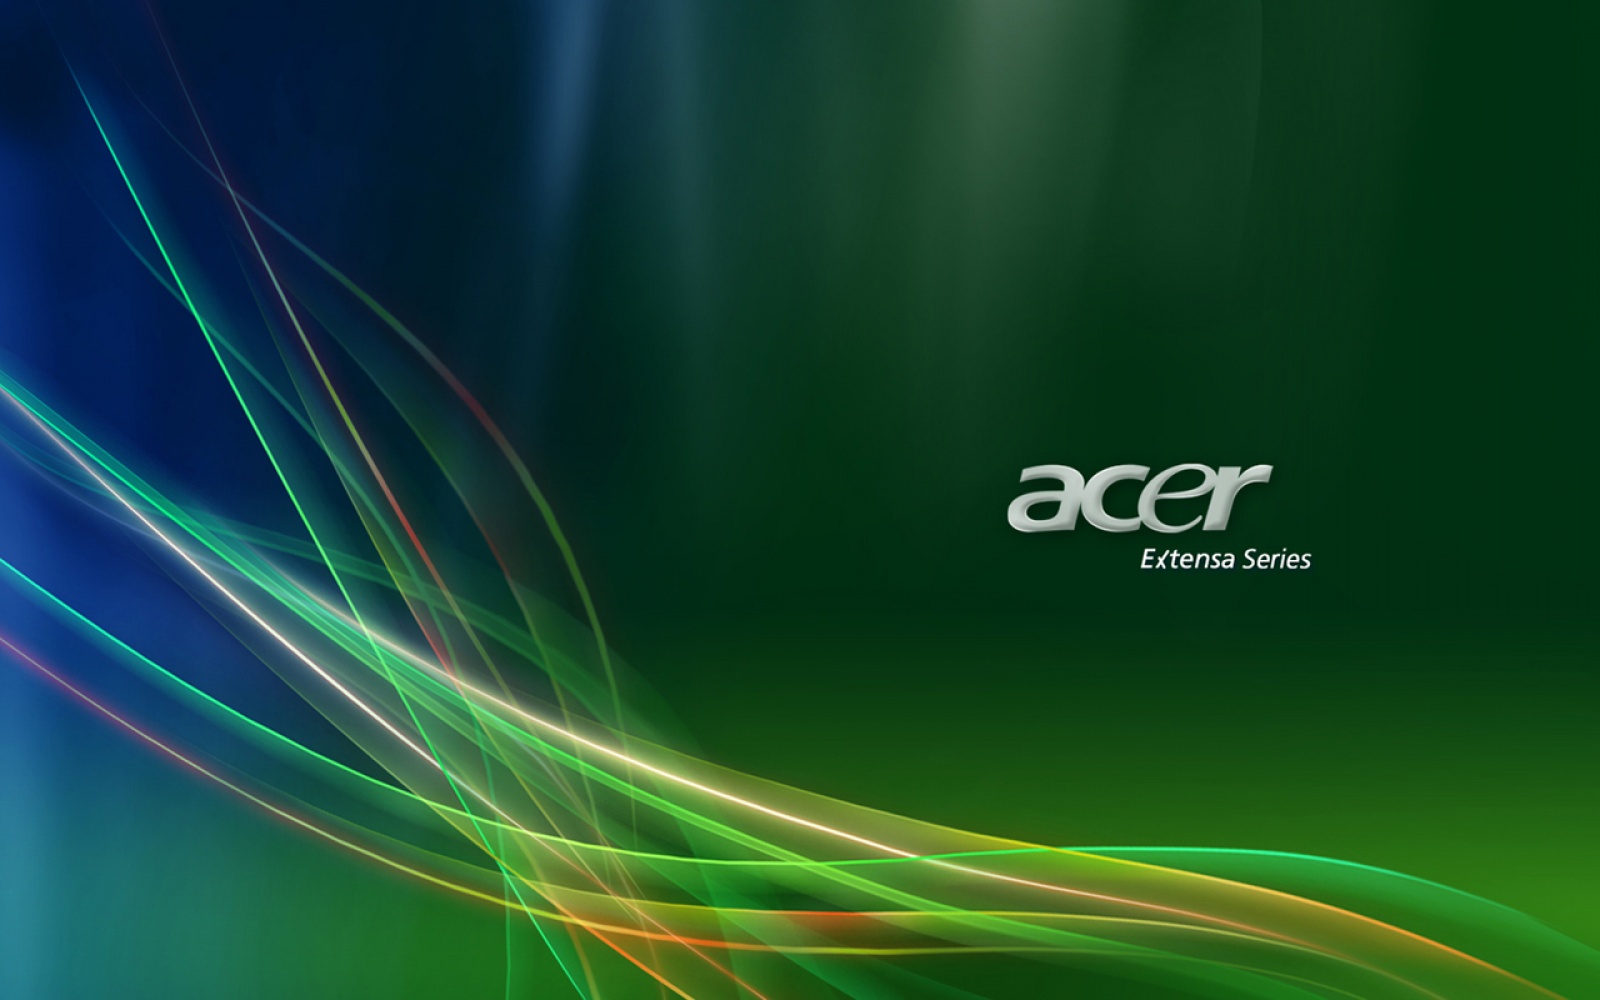 Hình nền máy tính Acer Desktop đẹp nhất? Hãy truy cập trang web của chúng tôi để tìm ra những bức ảnh hoàn hảo nhất cho màn hình máy tính của bạn và giúp cho không gian làm việc trở nên thật sự độc đáo và nổi bật.